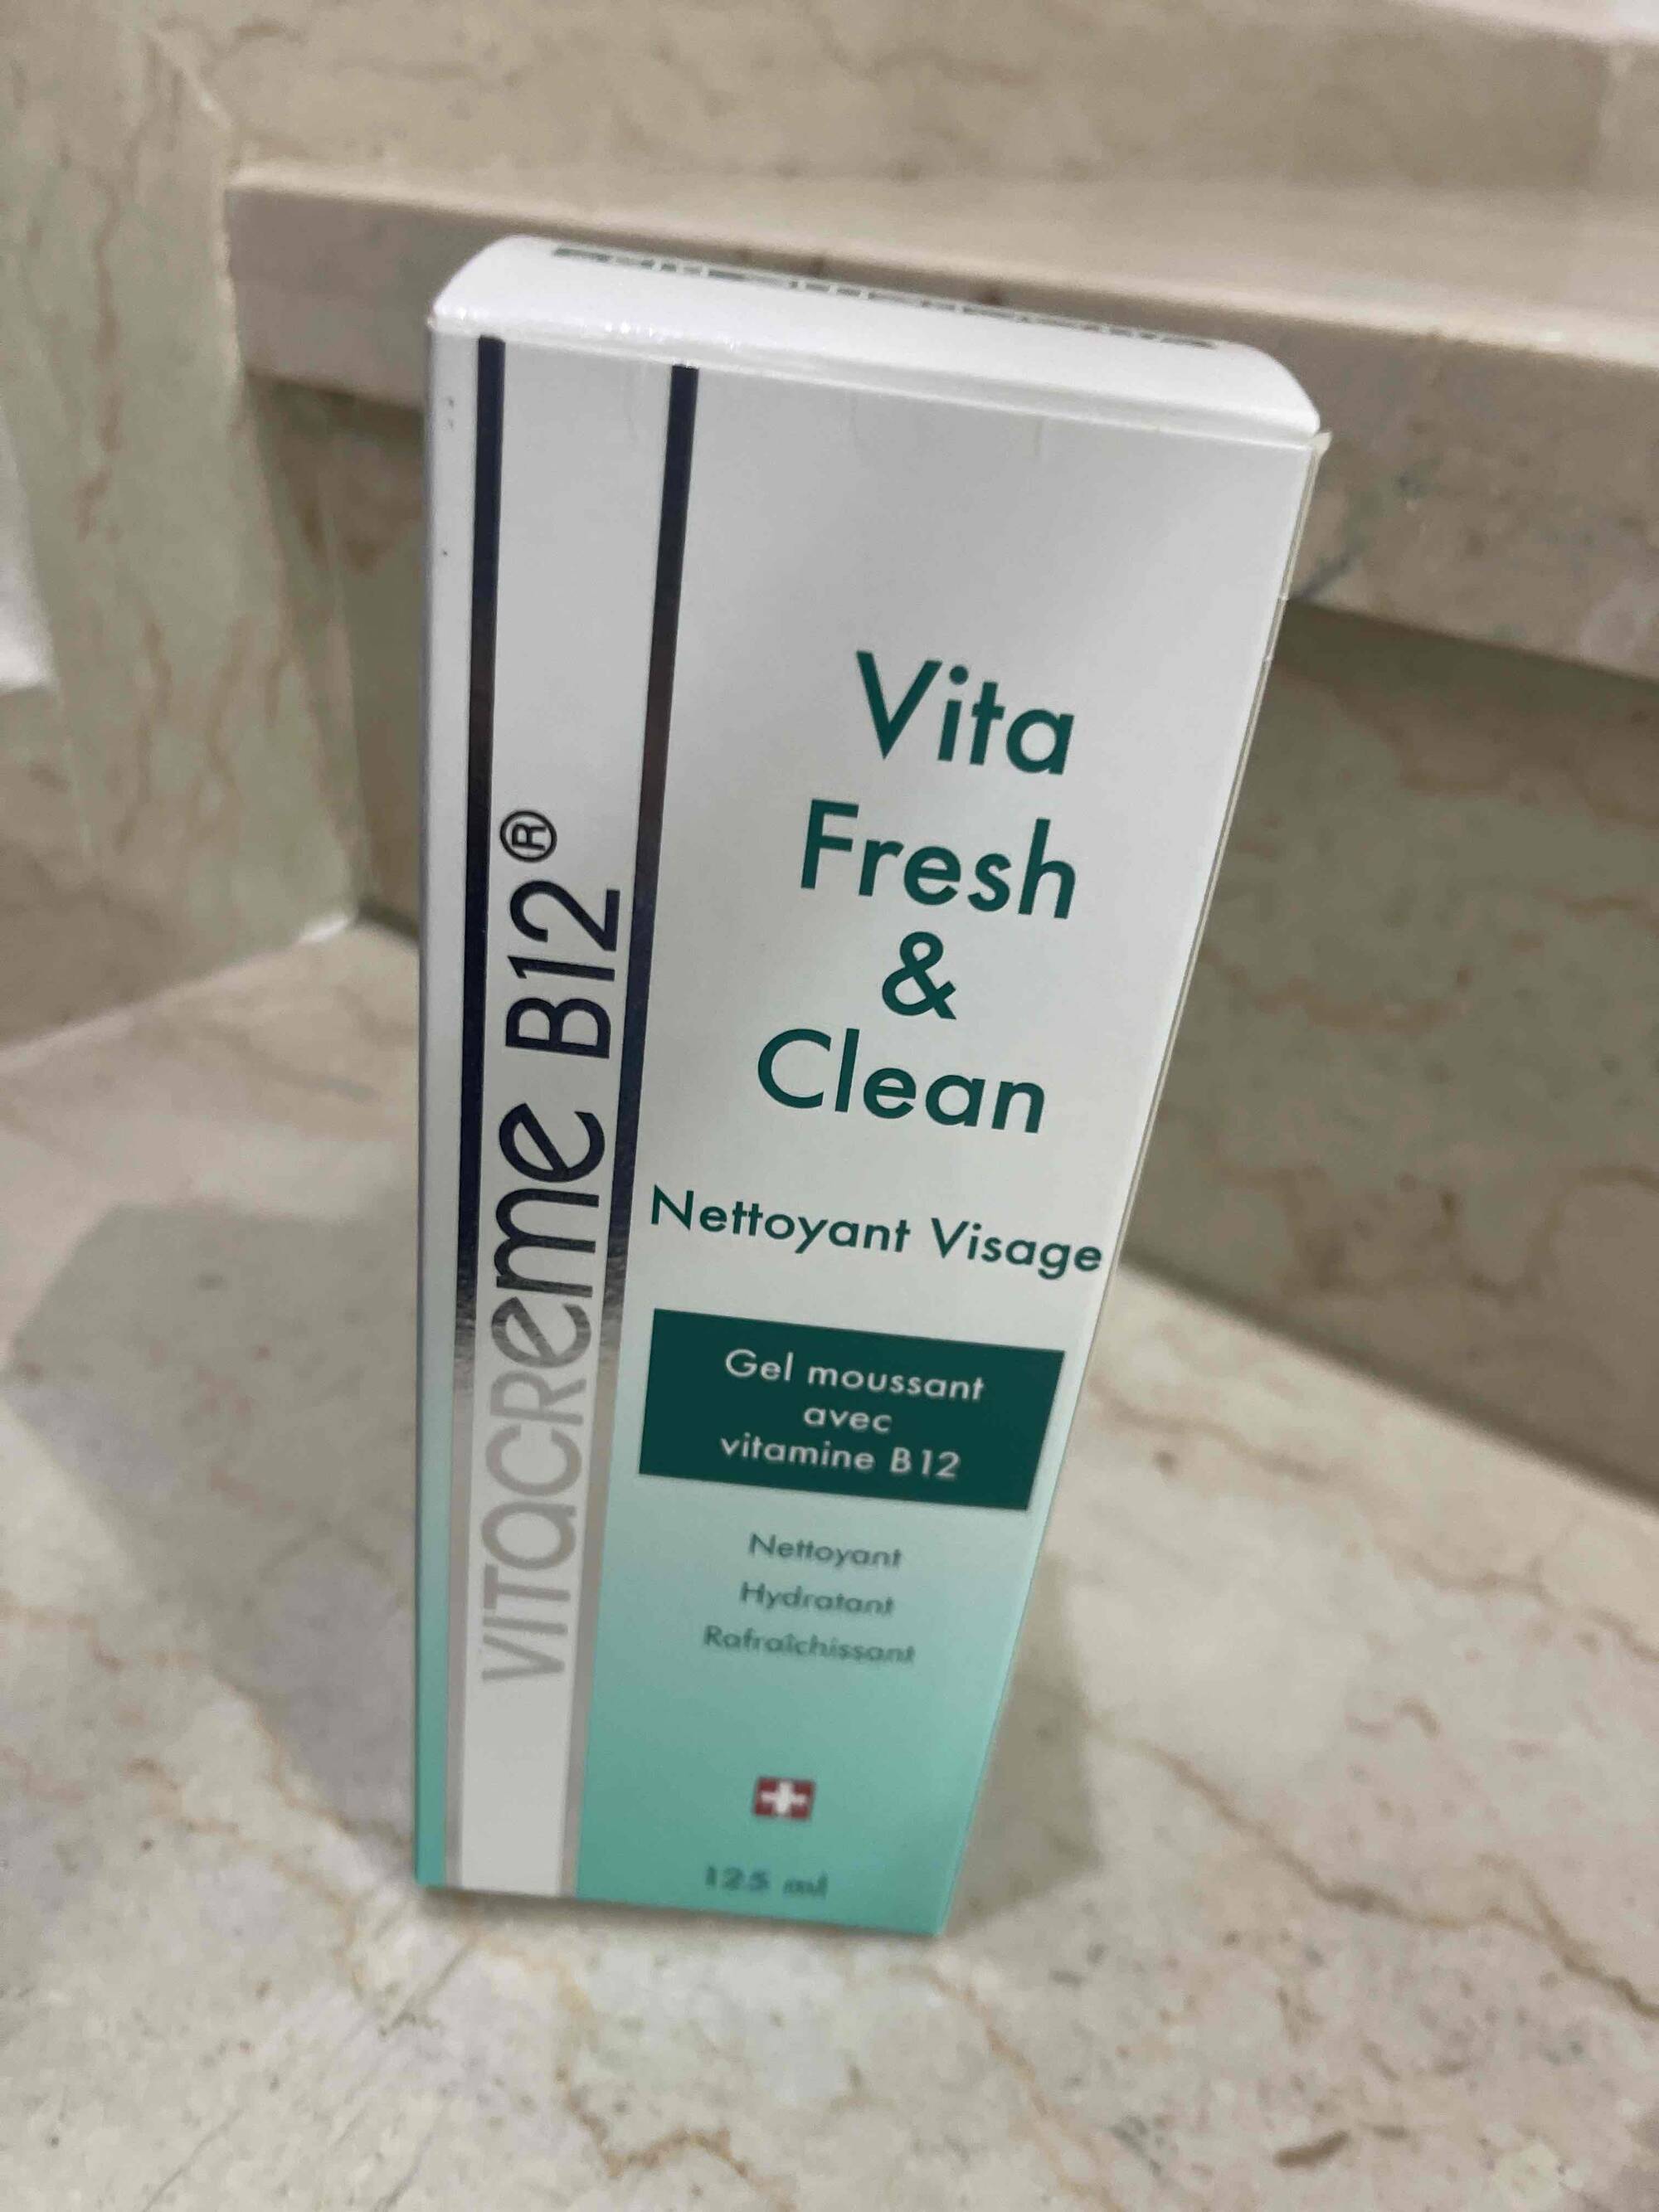 VITACREME B12 - Vita fresh & clean - Nettoyant visage